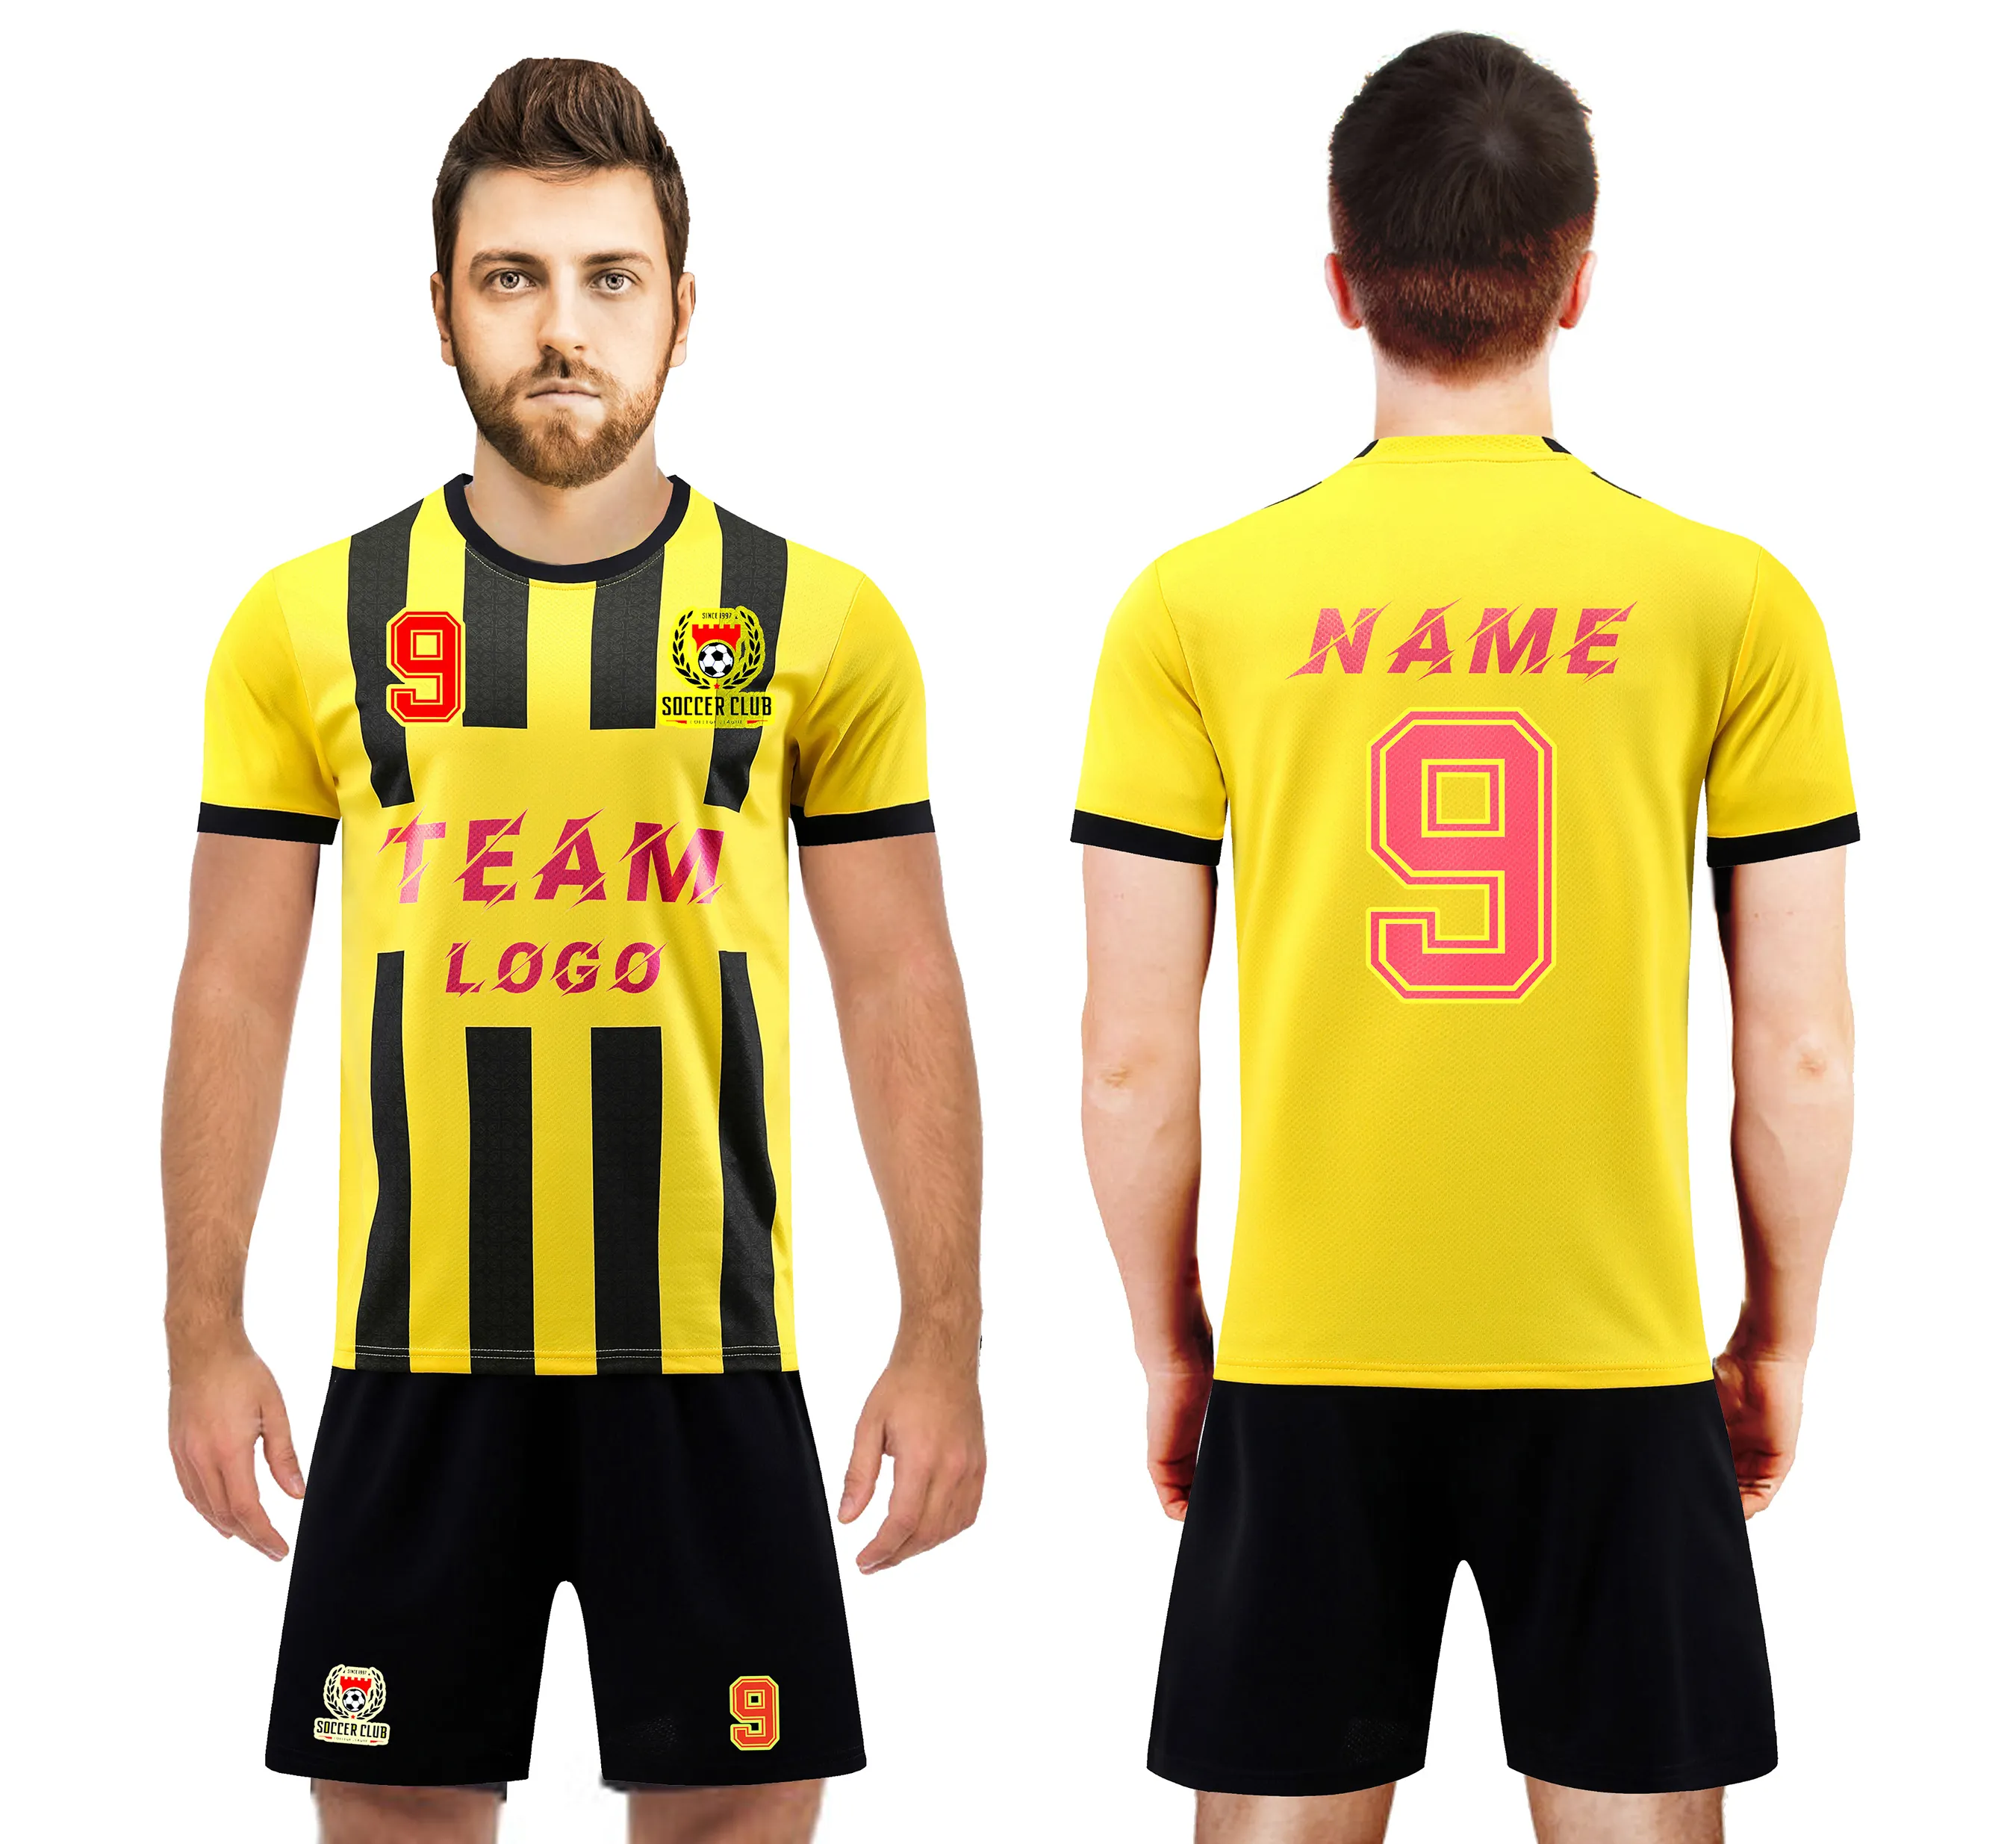 LUSON Nouvelle arrivée vente en gros d'uniformes de football pour jeunes vêtements de football ensemble de maillots d'uniformes de football personnalisés